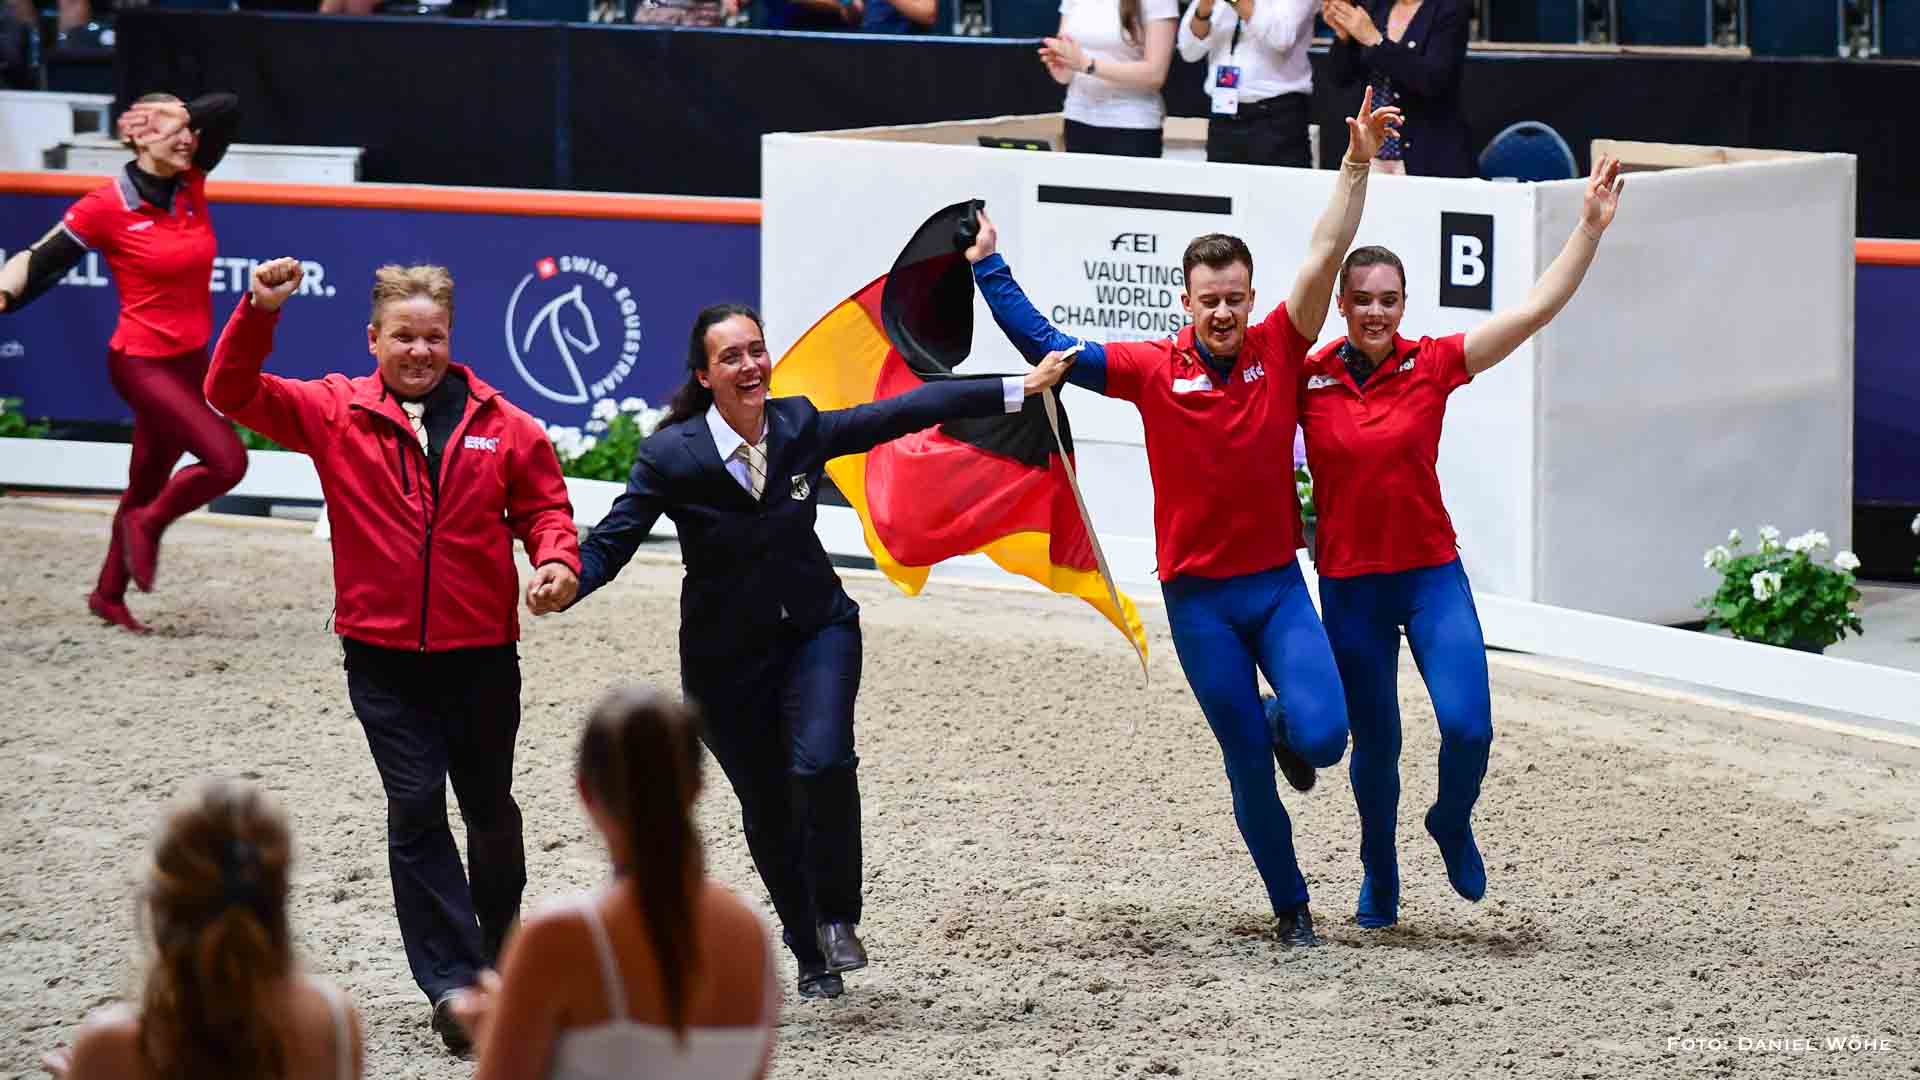 Bernauer Voltigierer holen Weltmeistertitel in Bern – Glüchwunsch!